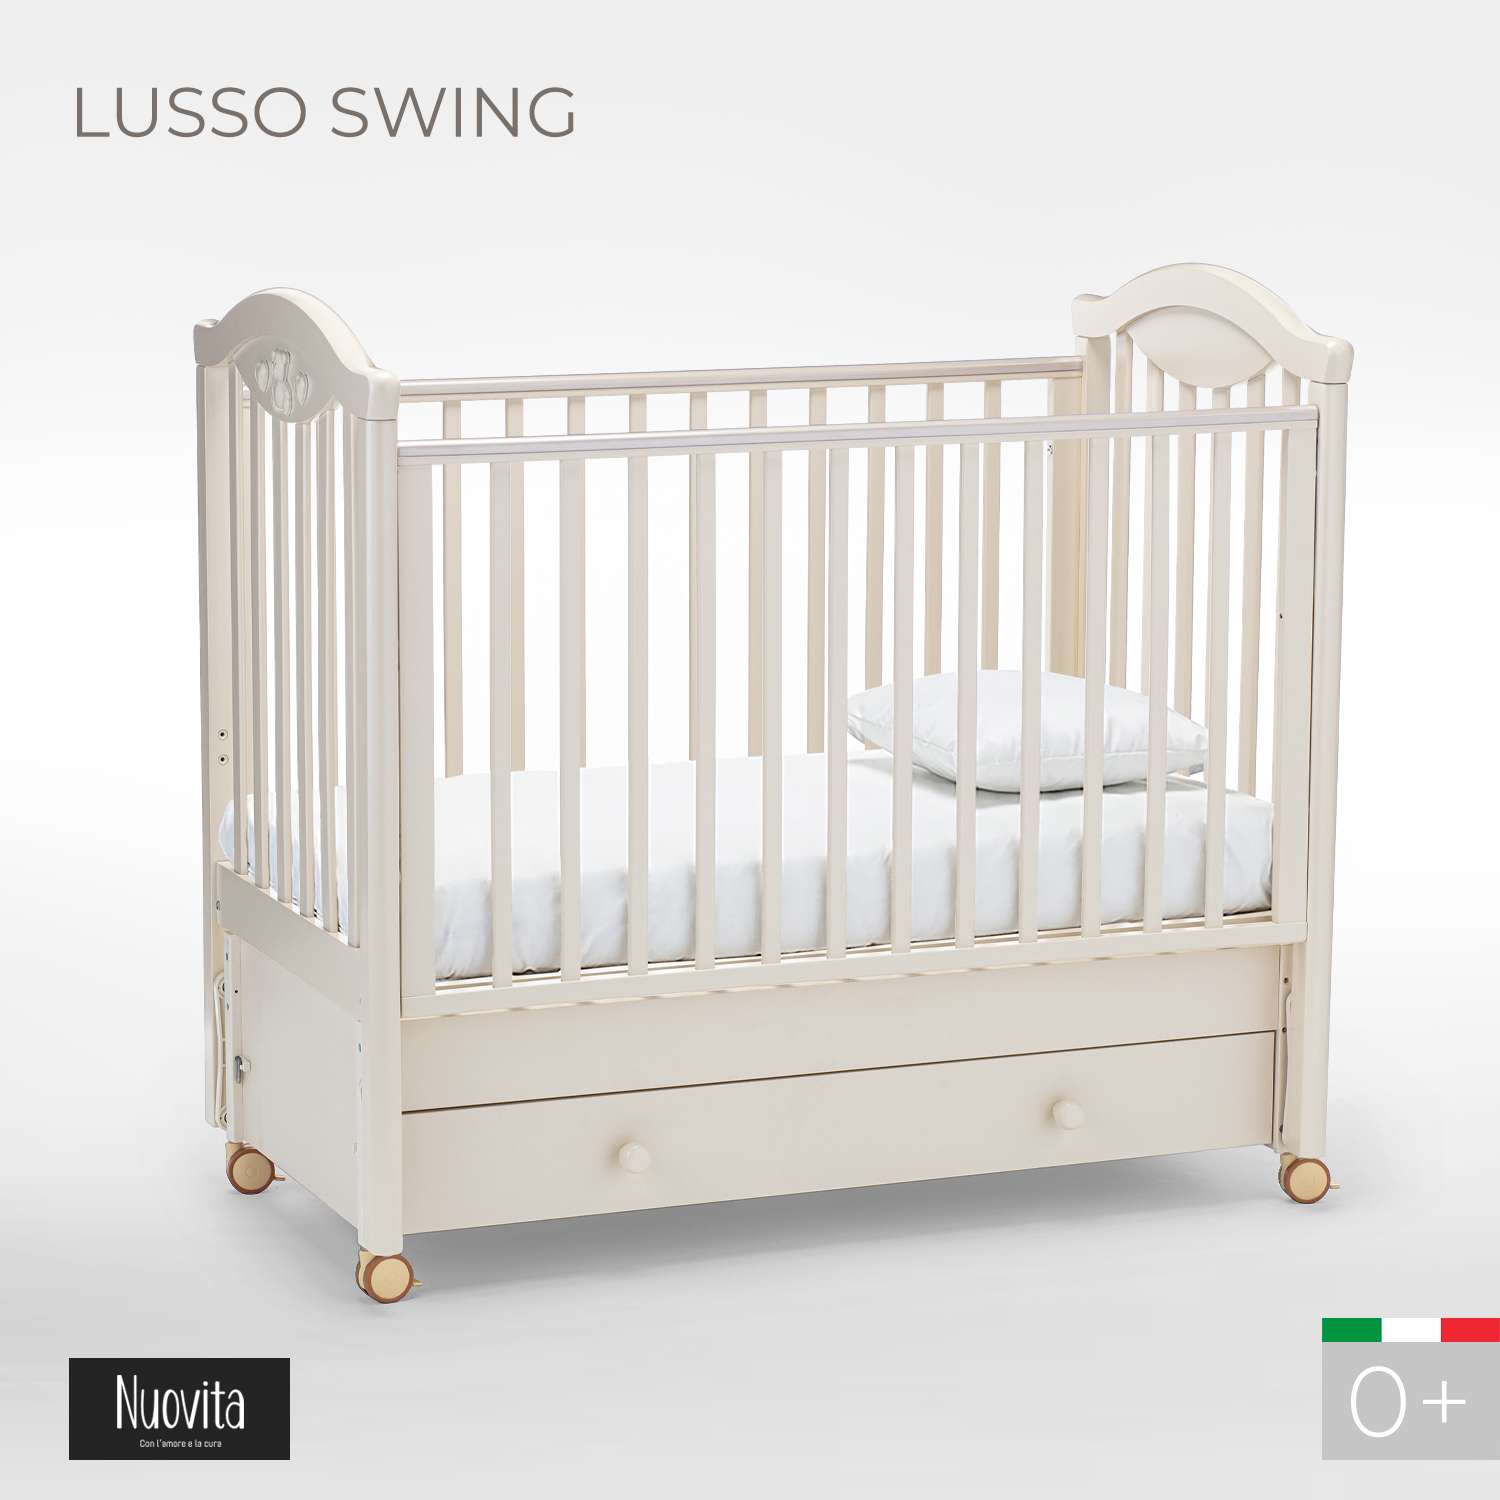 Кровать Nuovita Lusso Swing с продольным маятником Avorio/Слоновая кость - фото 2